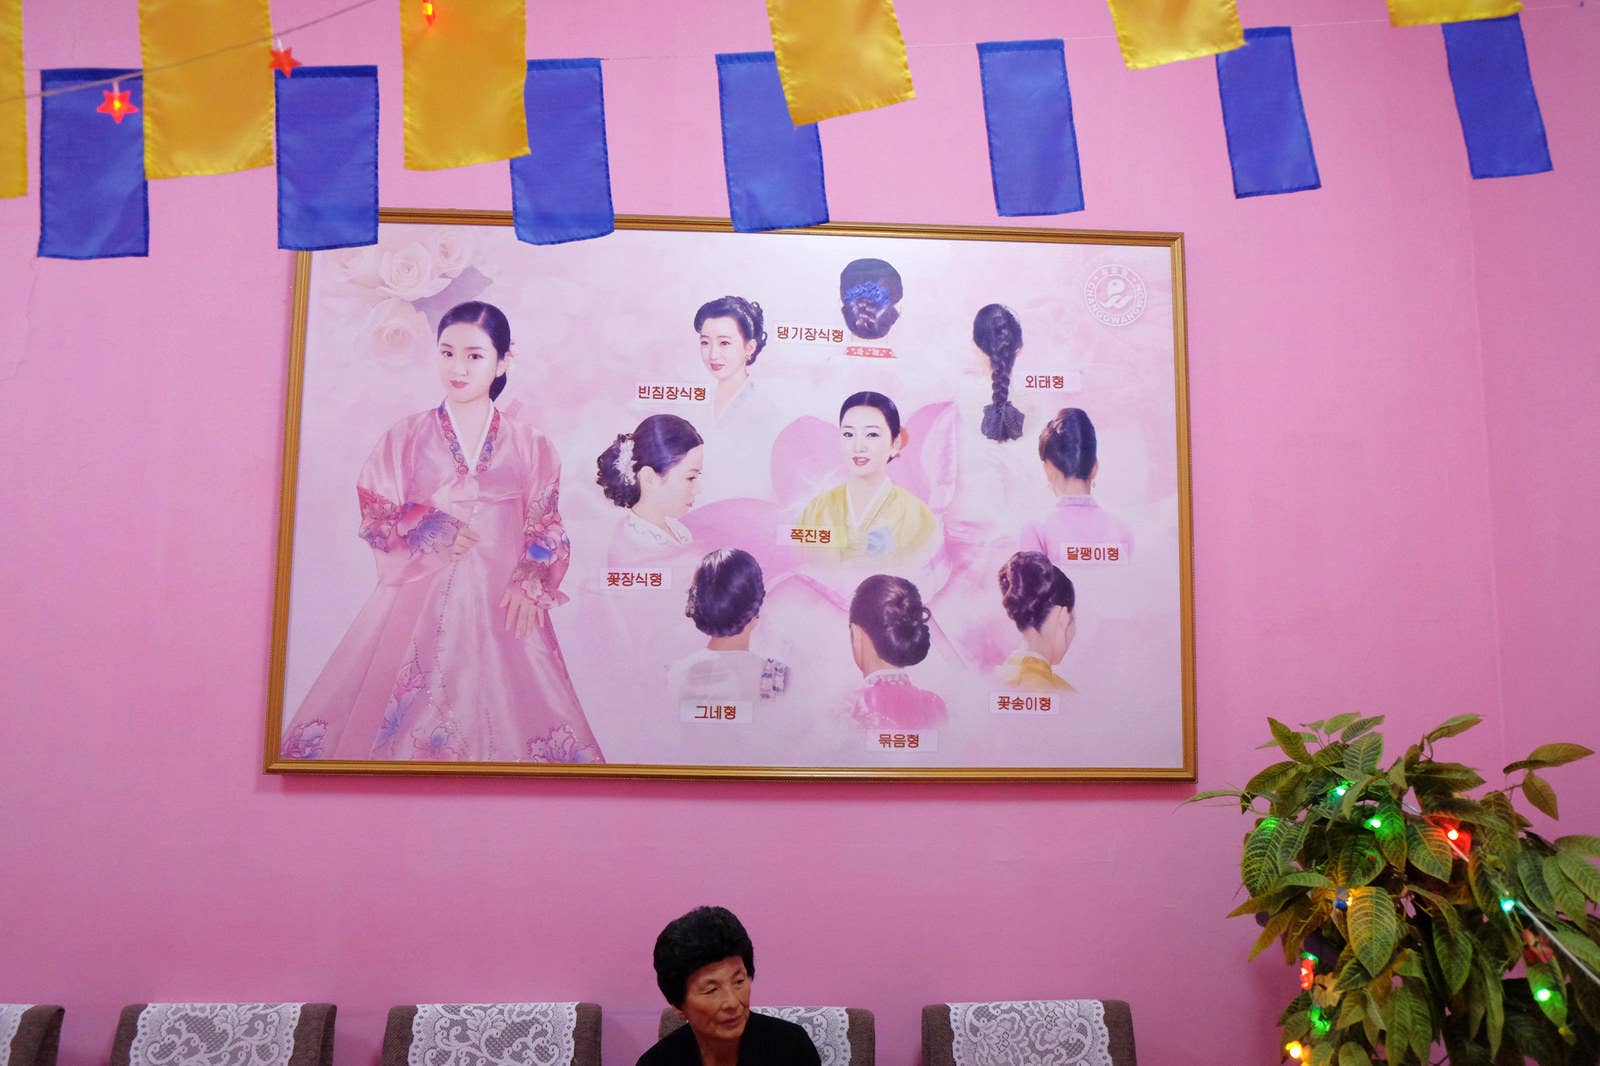 Traditional female Korean haircuts and a customer at a Pyongyang hair salon.